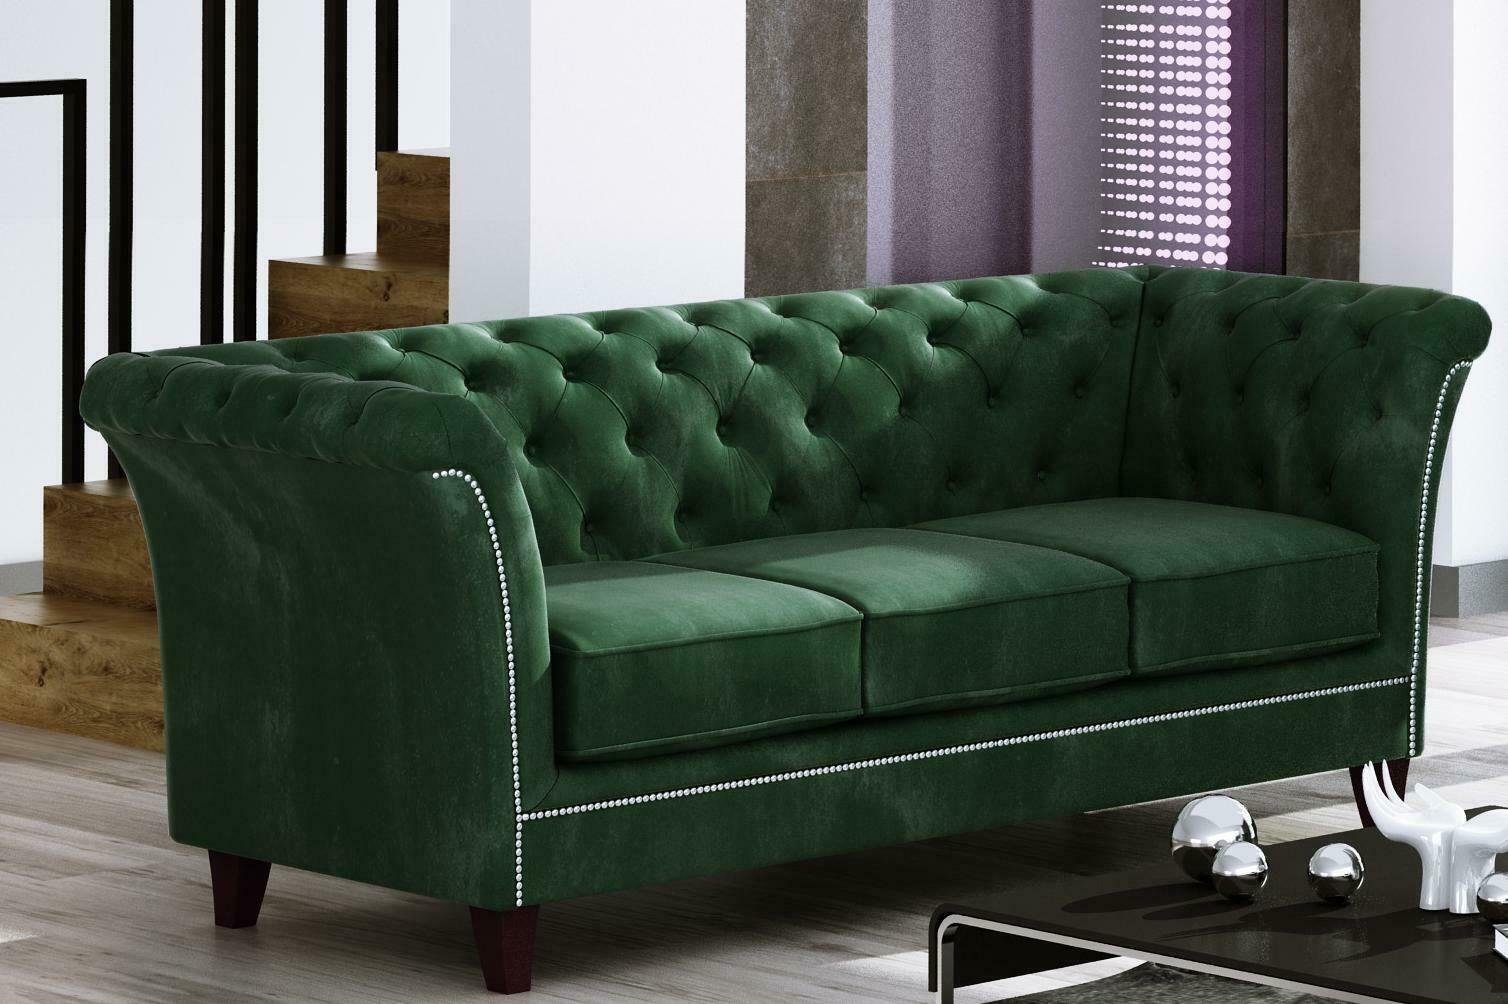 JVmoebel Sofa Couch Dreisitzer Luxus in Chesterfield Neu, Grüner Möbel 3-Sitzer Europe Edel Made